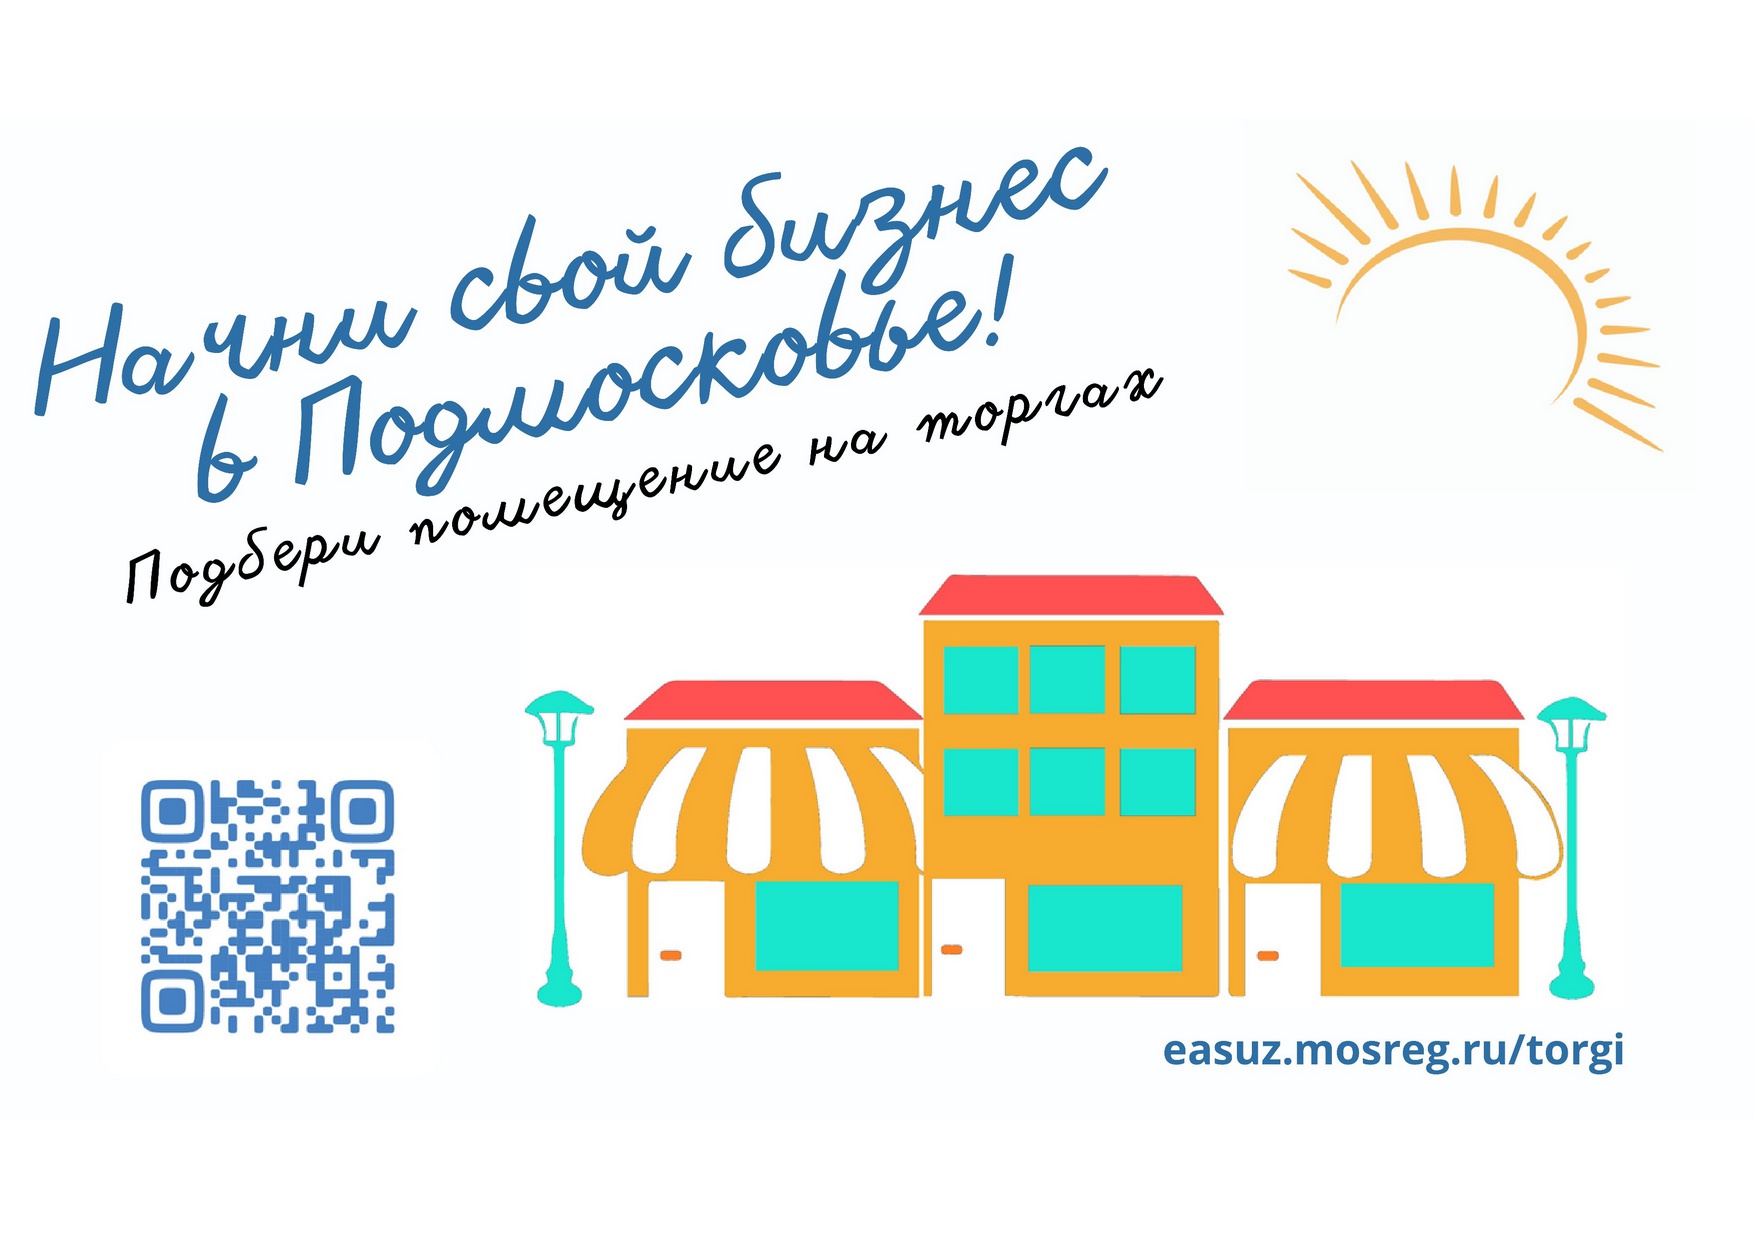 Начни свой бизнес в Подмосковье! Подбери помещение на торгах easuz.mosreg.ru/torgi